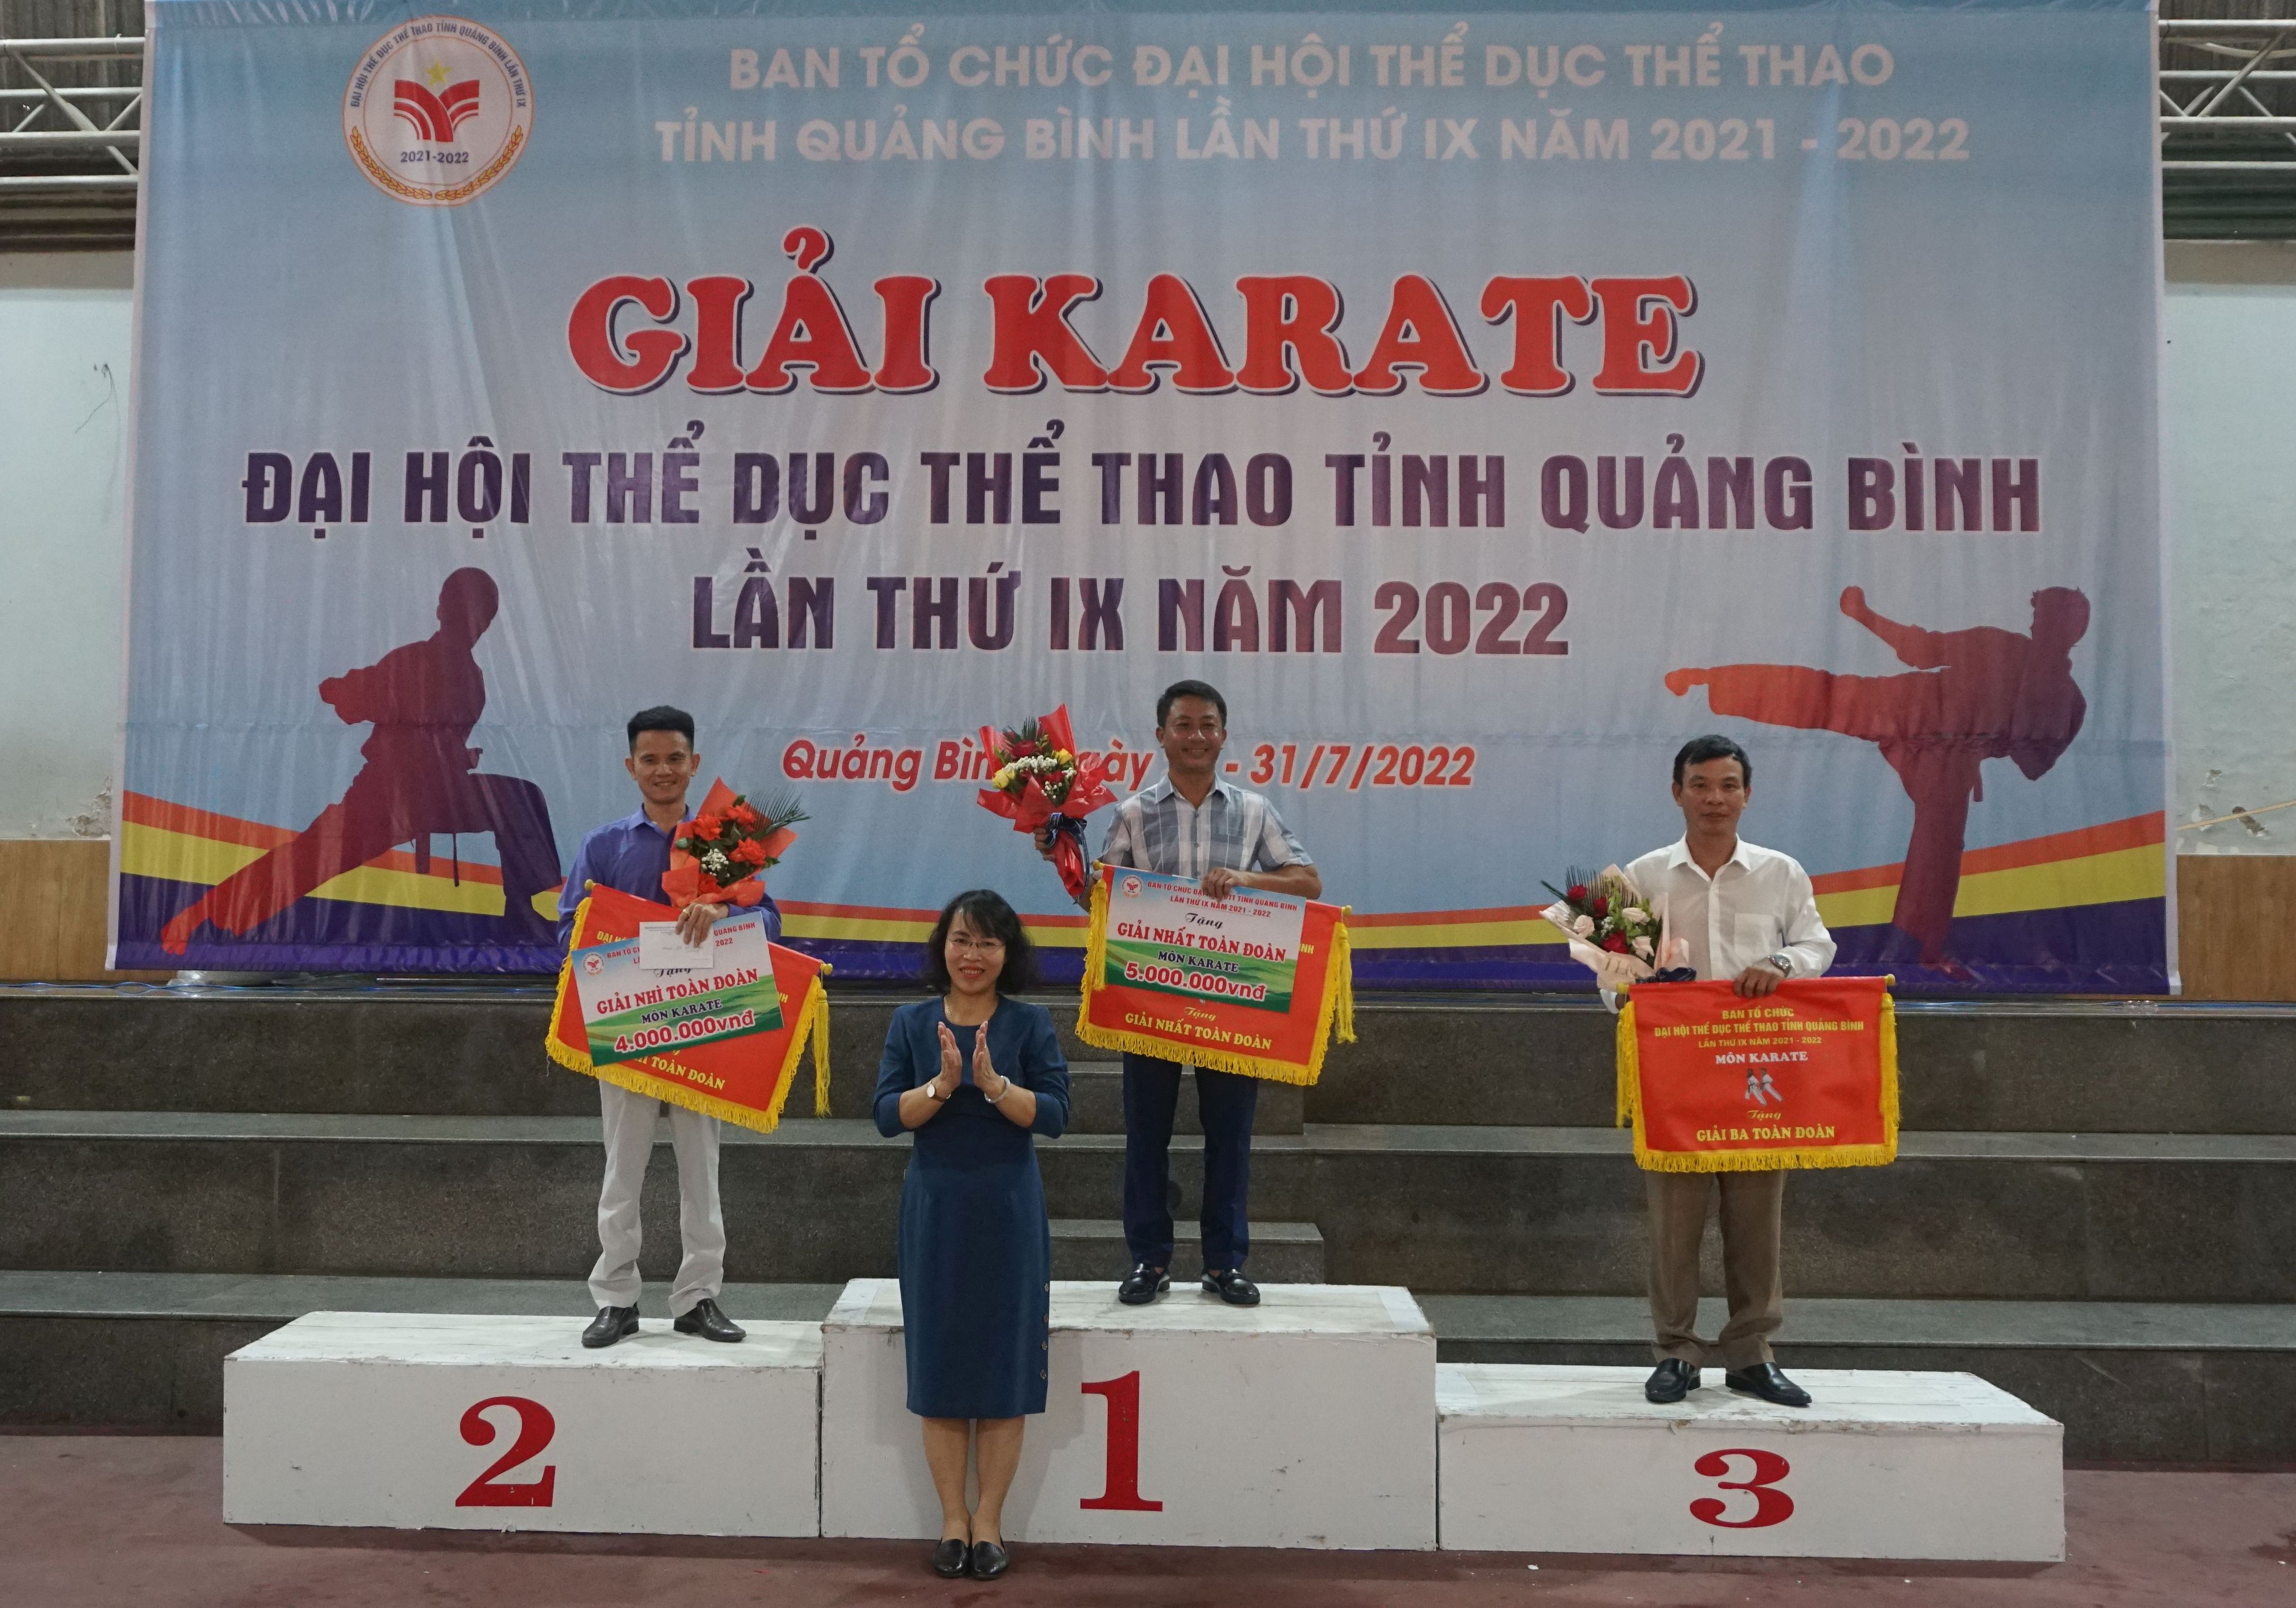 Ban tổ trao giải nhất, nhì, ba toàn đoàn cho các đội Karate Tuyên Hóa, Hiệp hội du lịch Quảng Bình và Quảng Ninh.